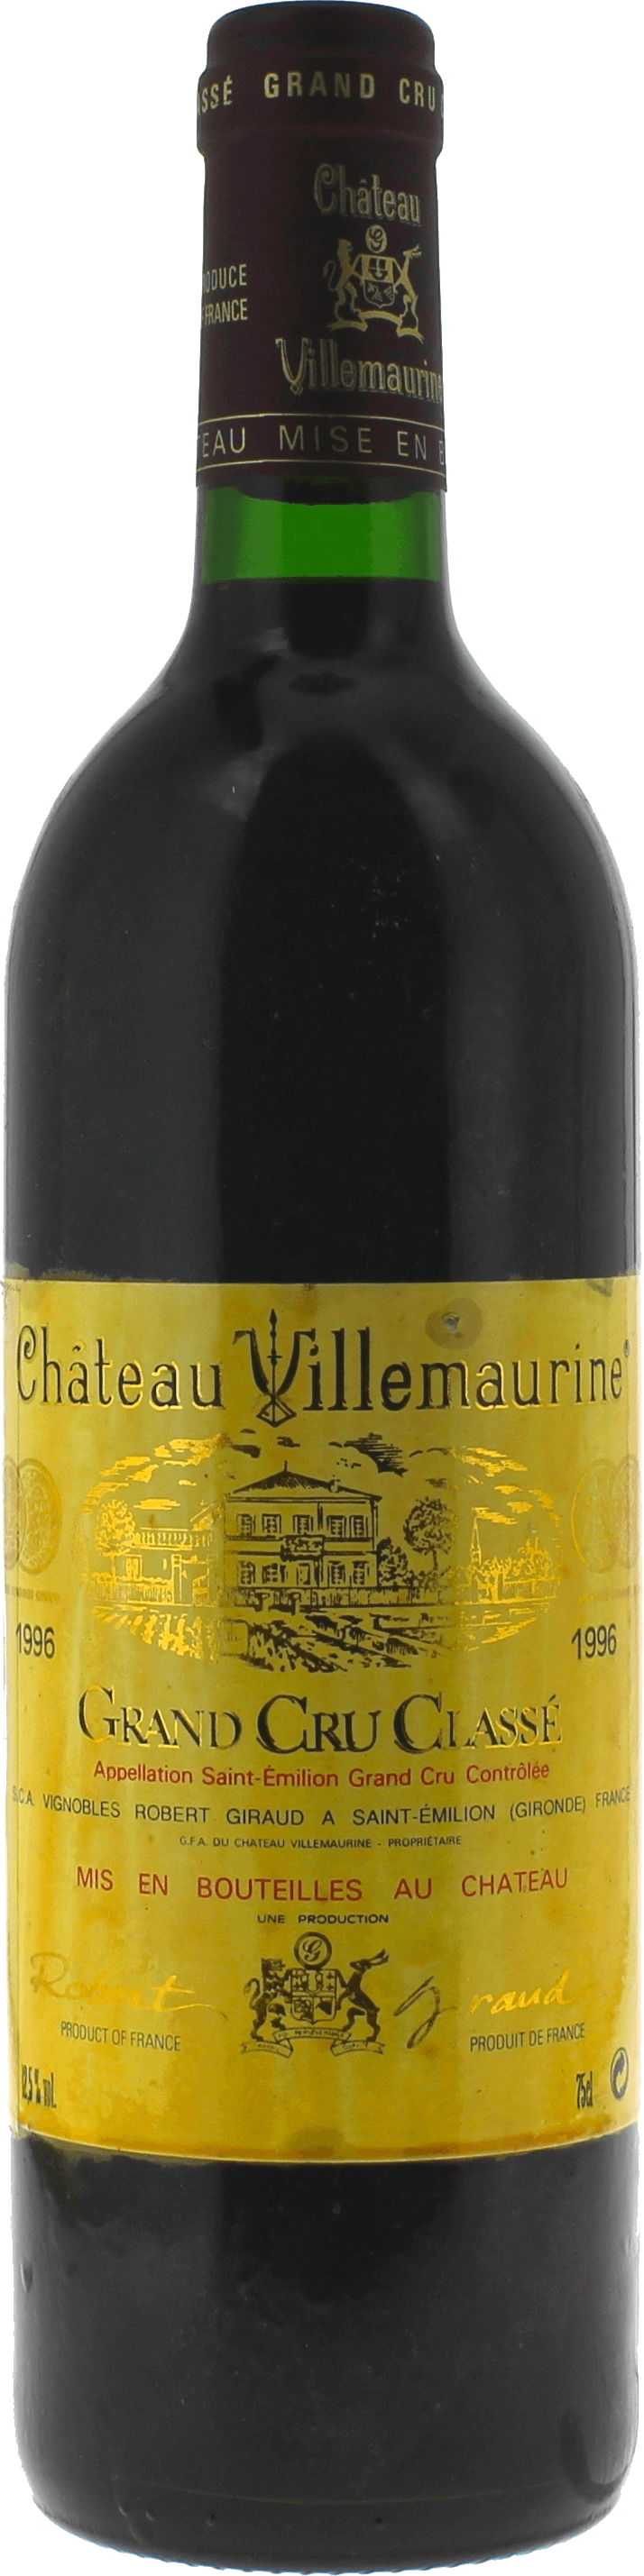 Villemaurine 1996  Saint-Emilion, Bordeaux rouge